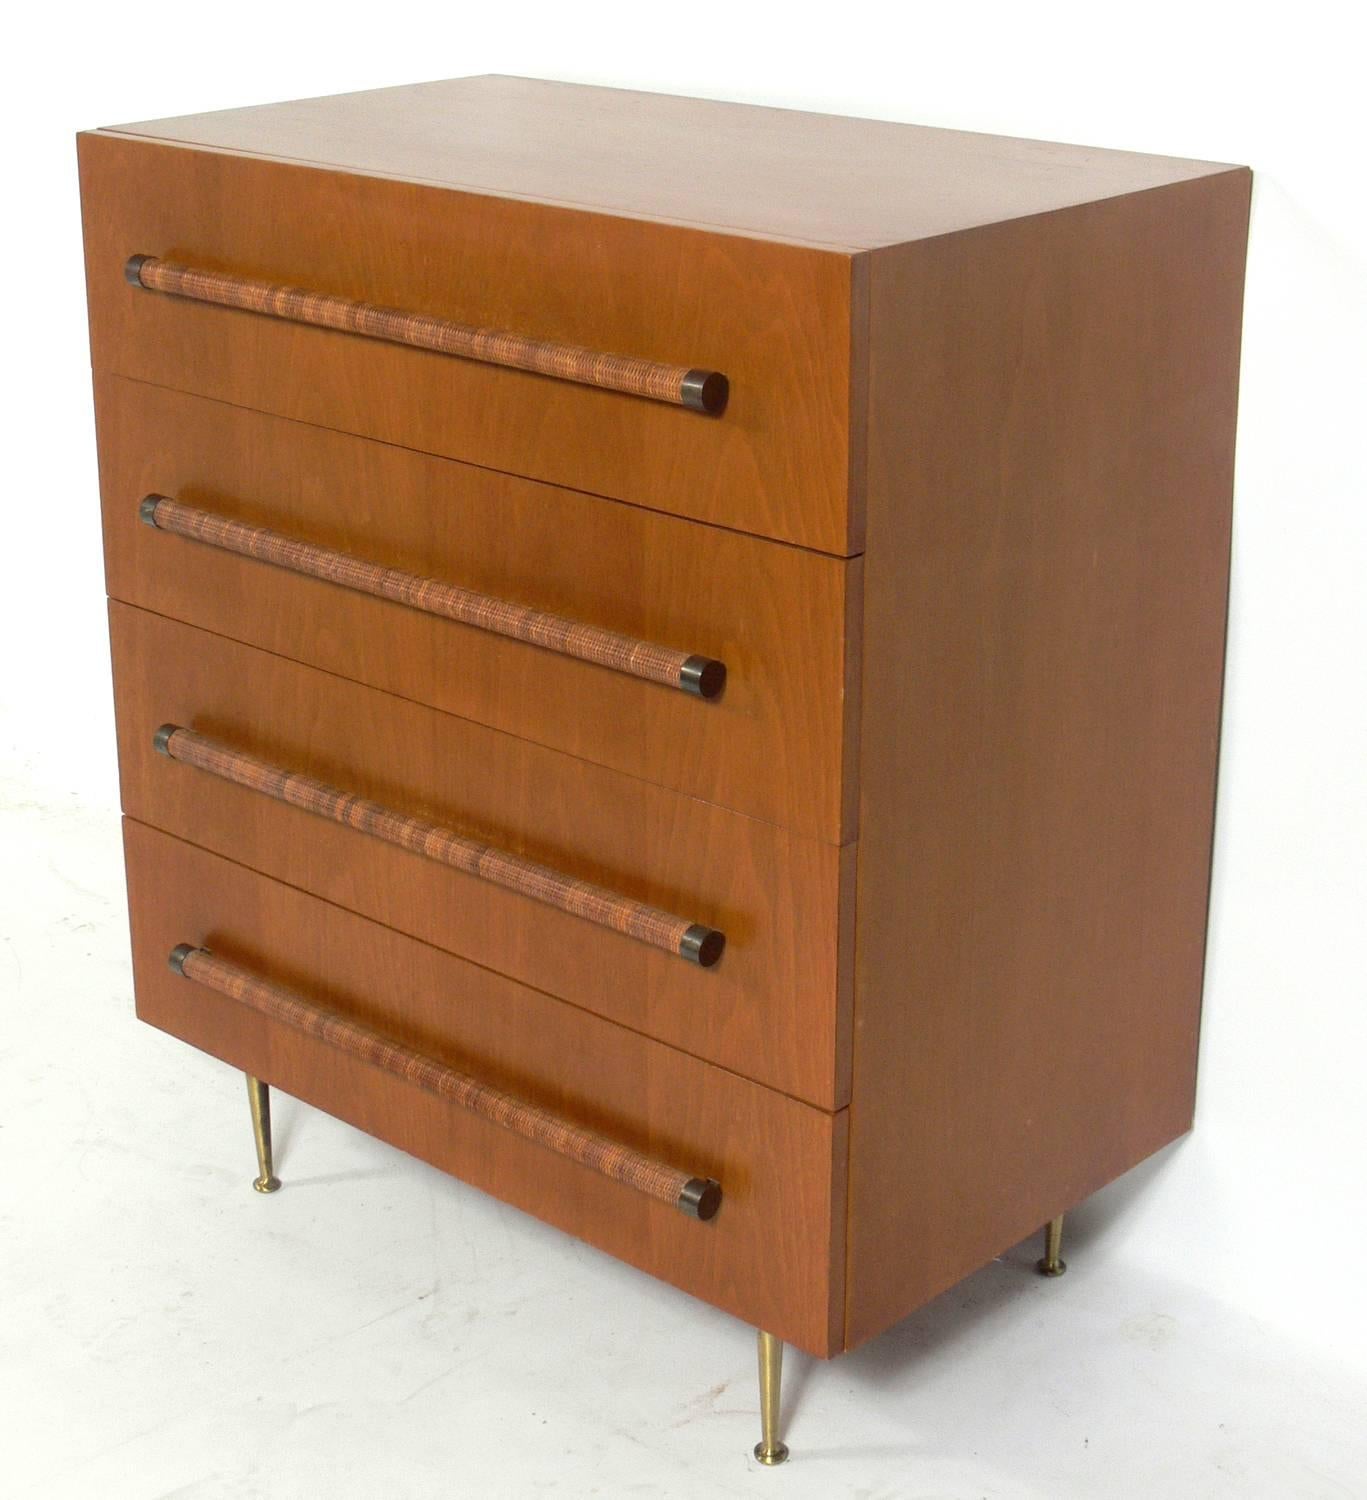 Elegant modern chest, designed by T.H. Robsjohn-Gibbings for Widdicomb, American, circa 1950s.